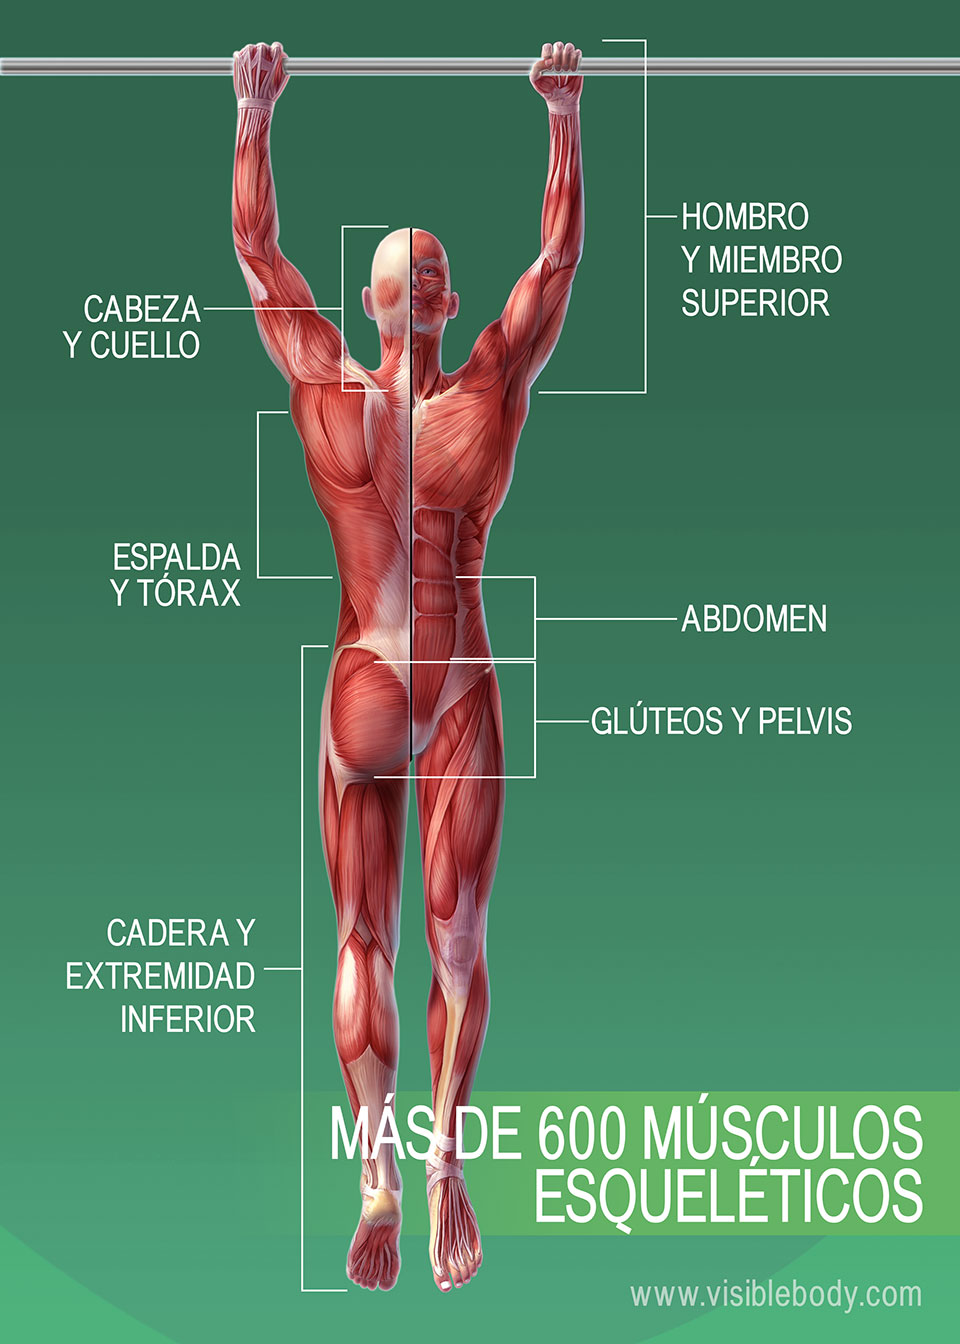 Músculos de la espalda - Anatomia I